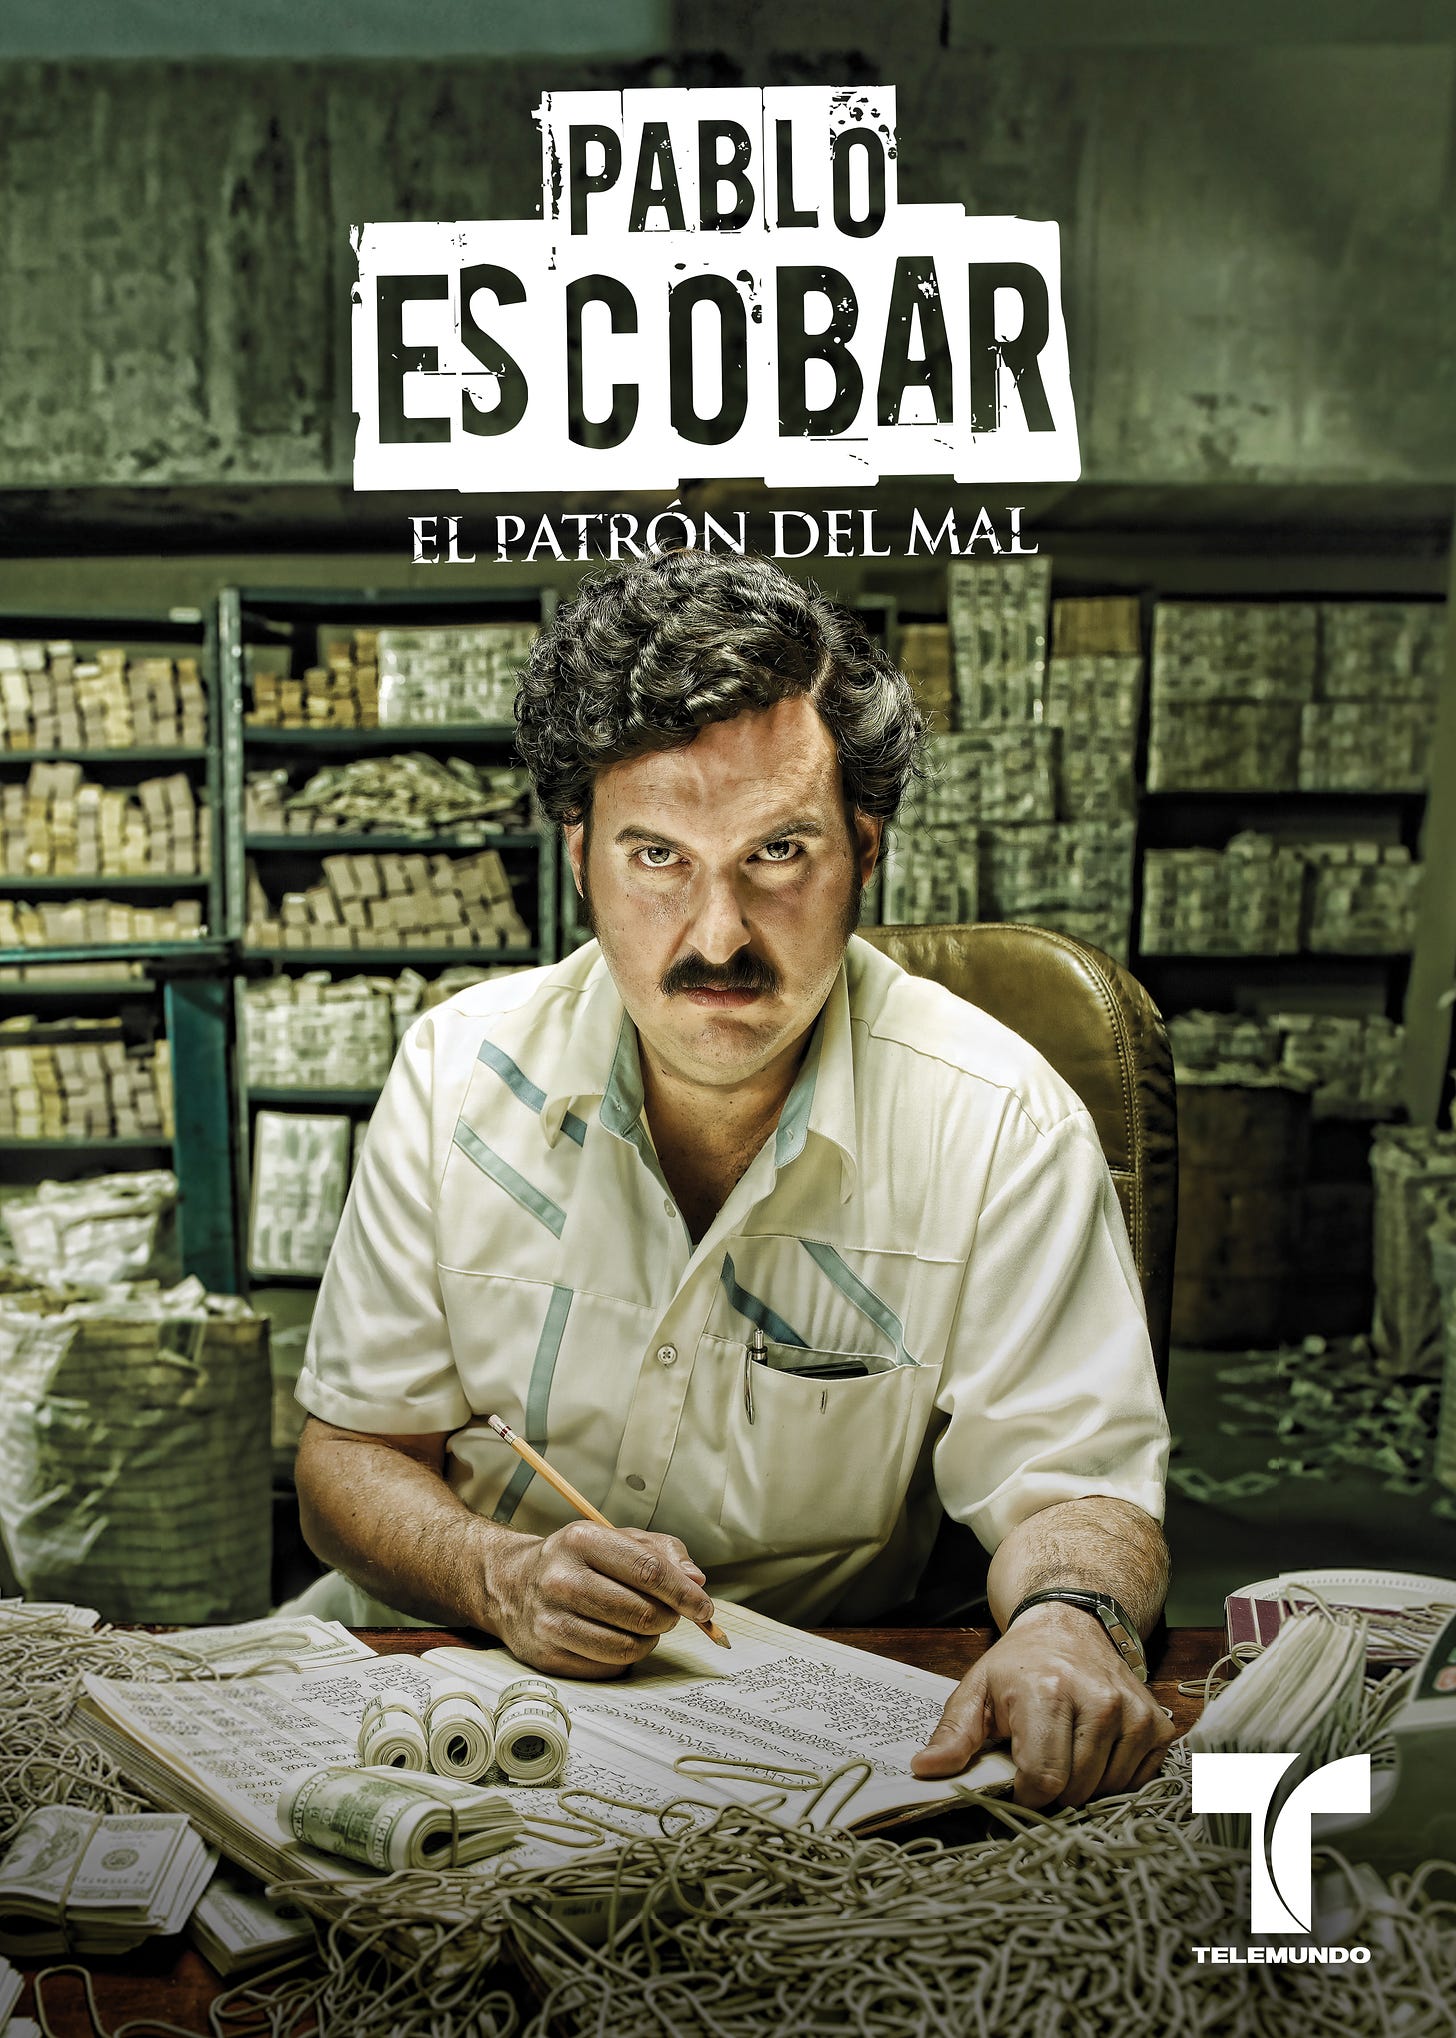 Pablo Escobar: El Patrón del Mal (TV Series 2012) - IMDb